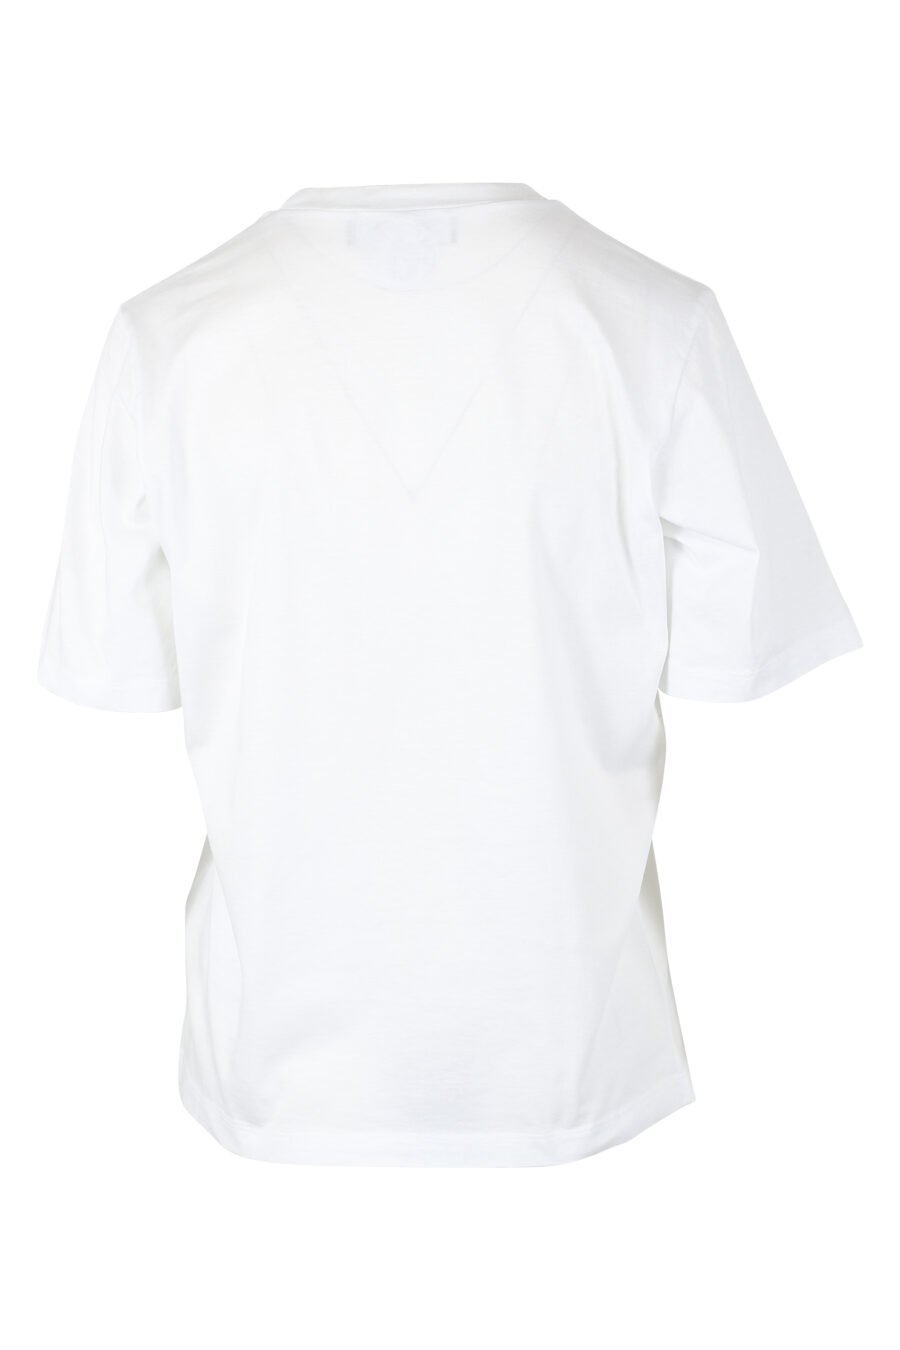 Camiseta blanca con logo "icon" y perro surfer - IMG 9786